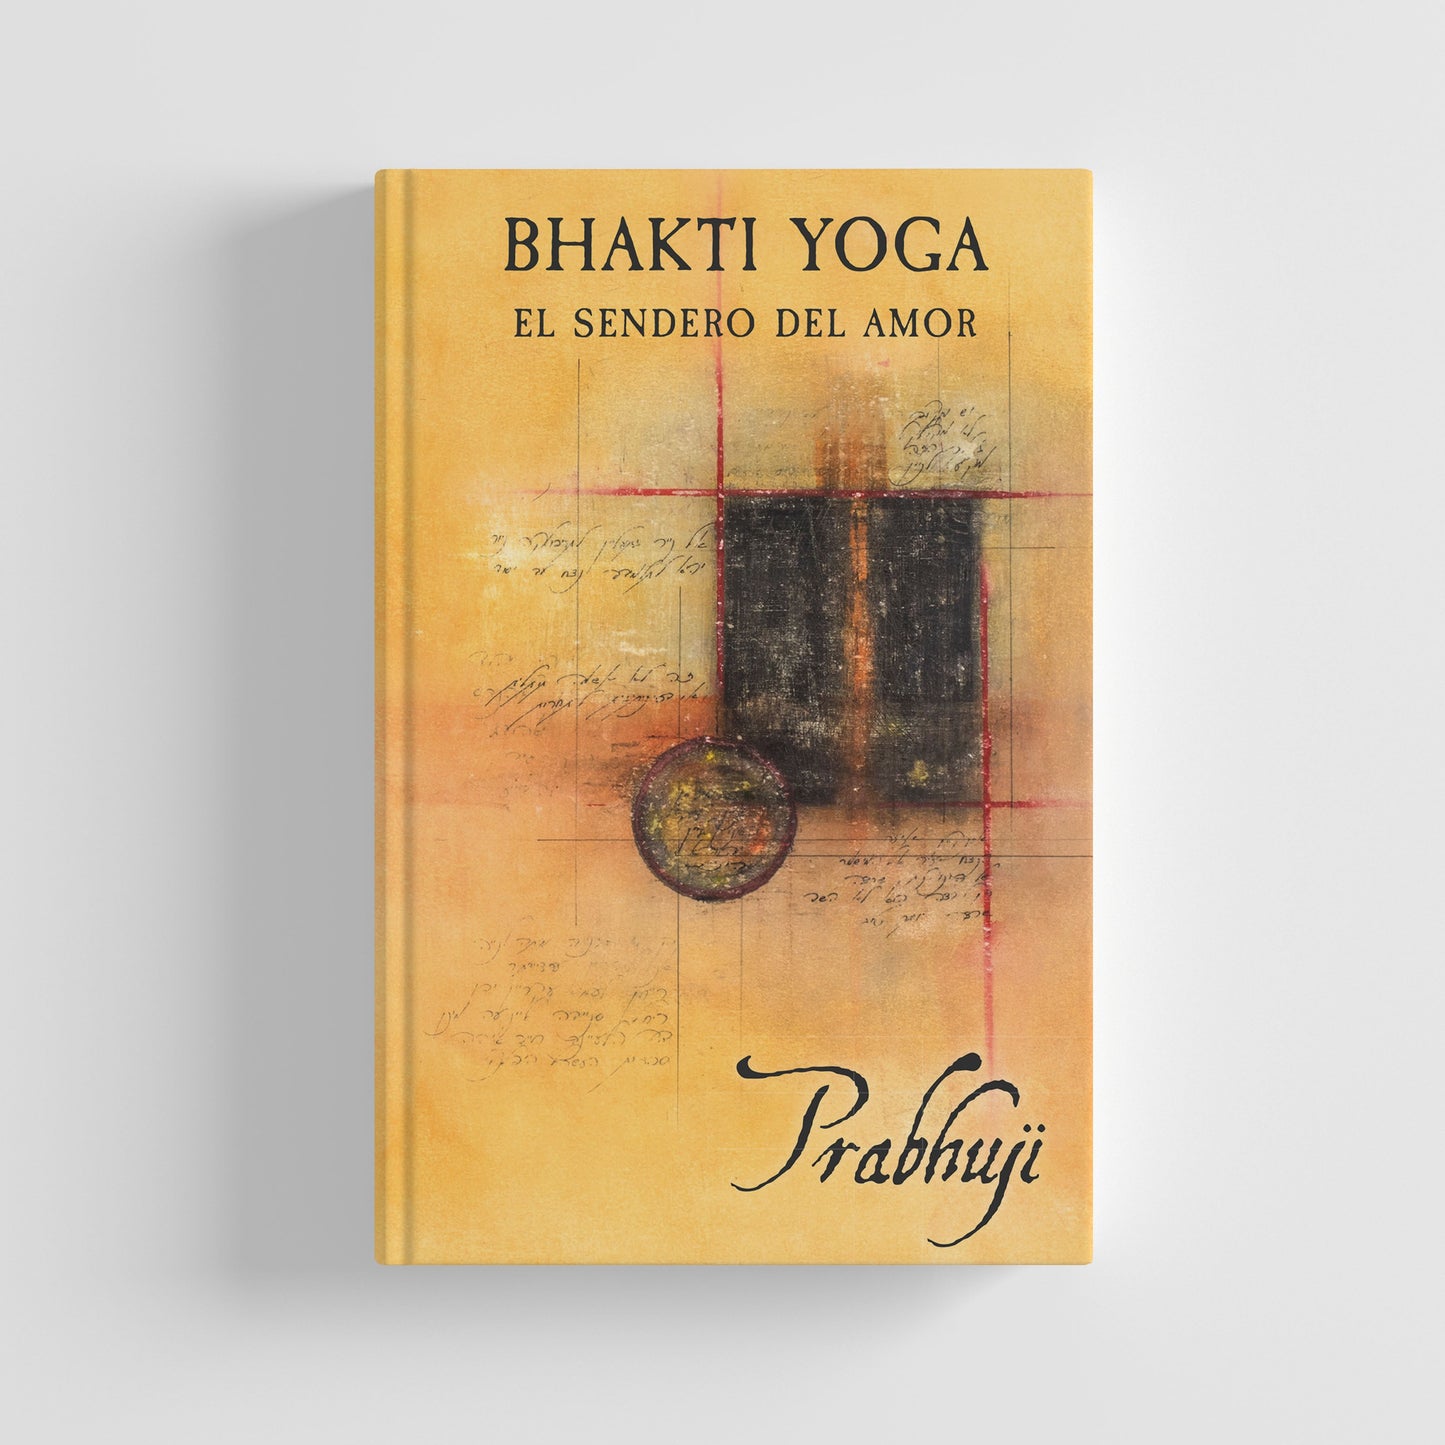 Book Bhakti yoga - El sendero del amor con Prabhuji (Hard cover - Spanish)